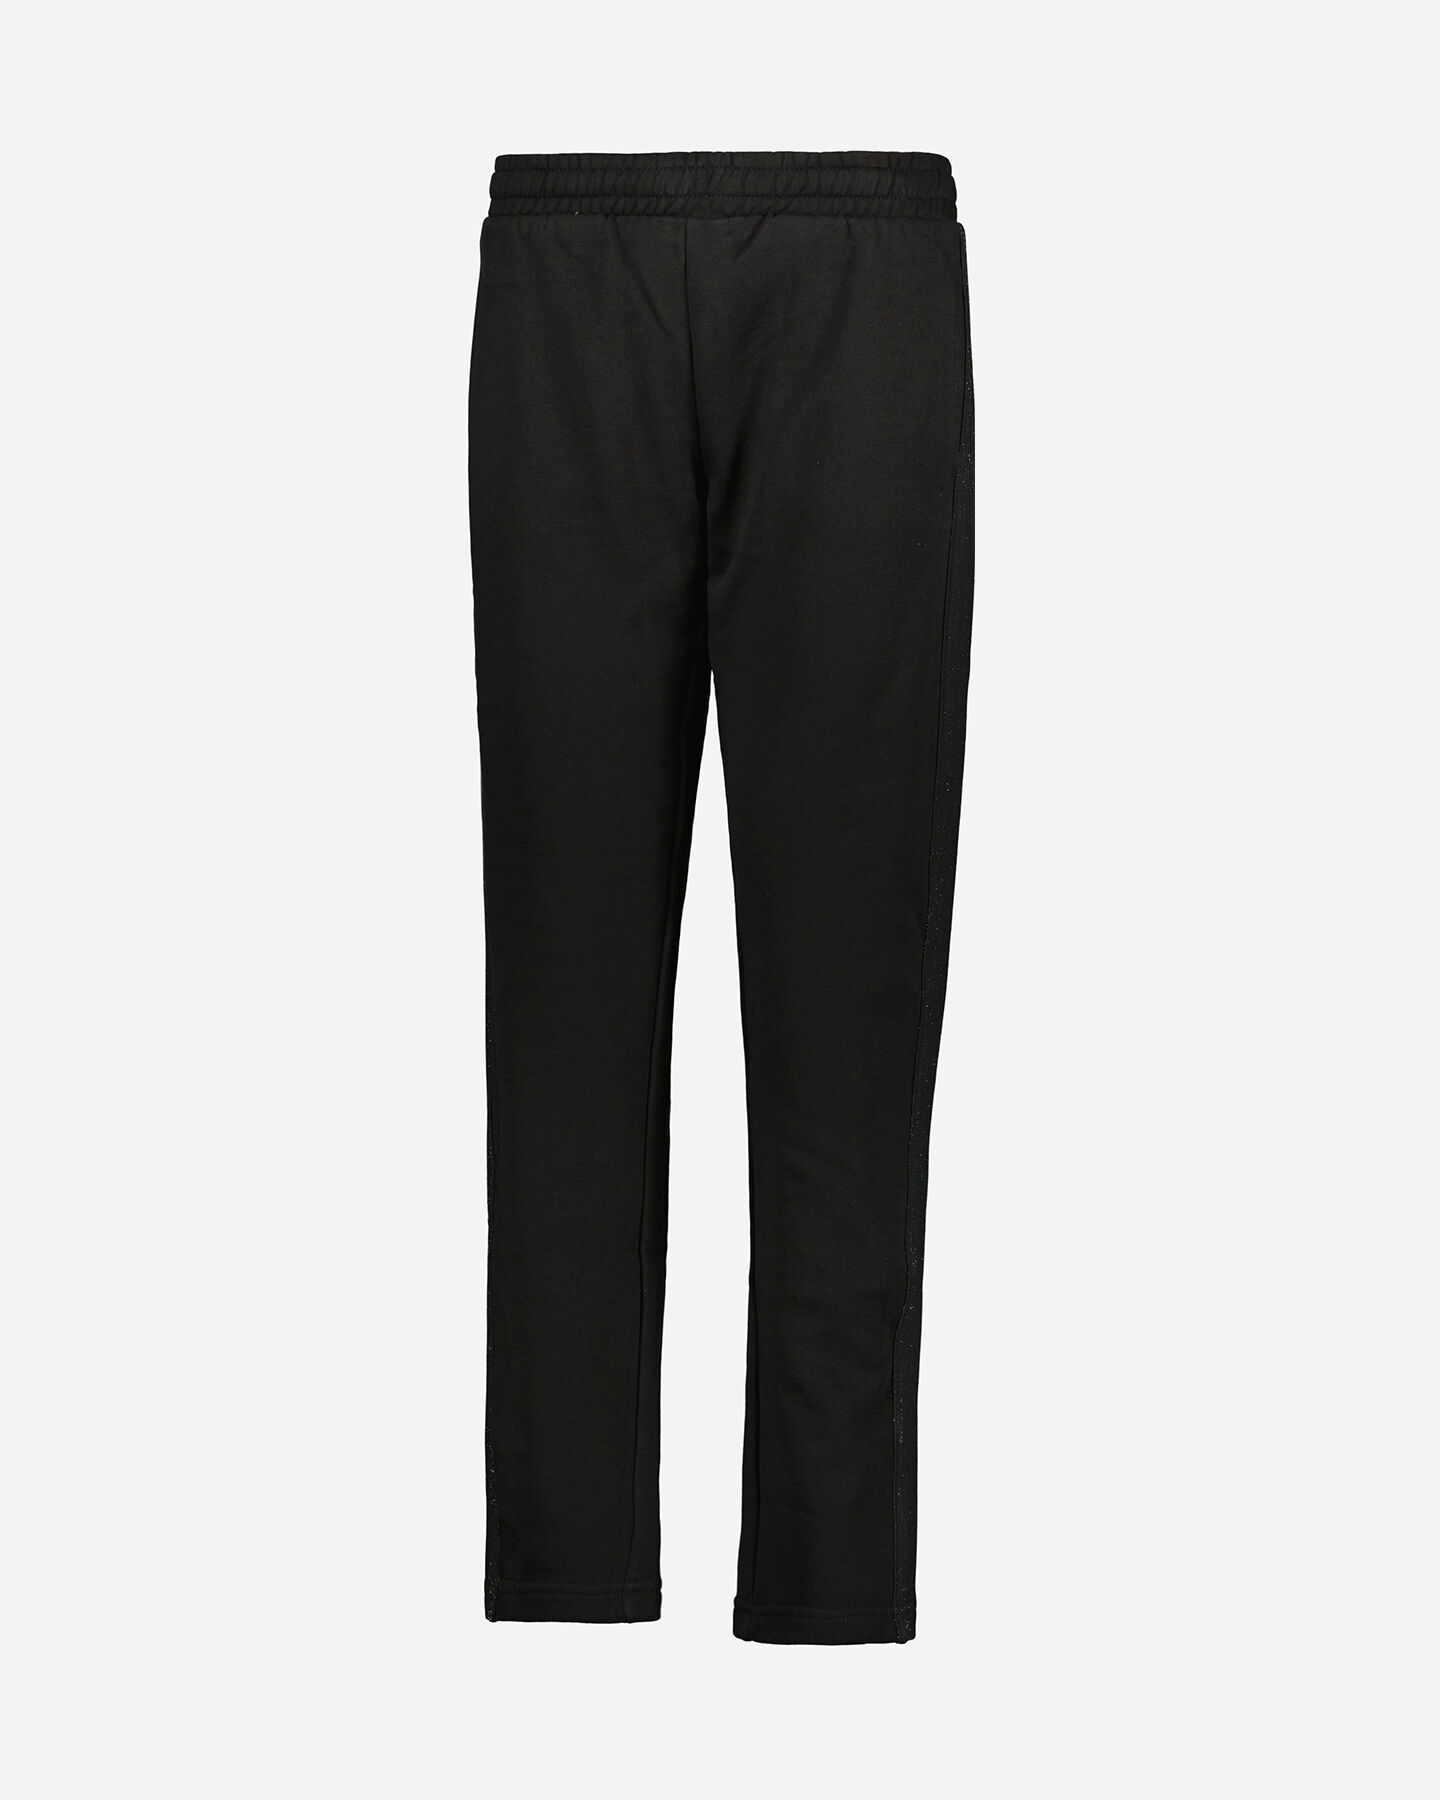  Pantalone ADMIRAL CLASSIC W S4106271|050|M scatto 0